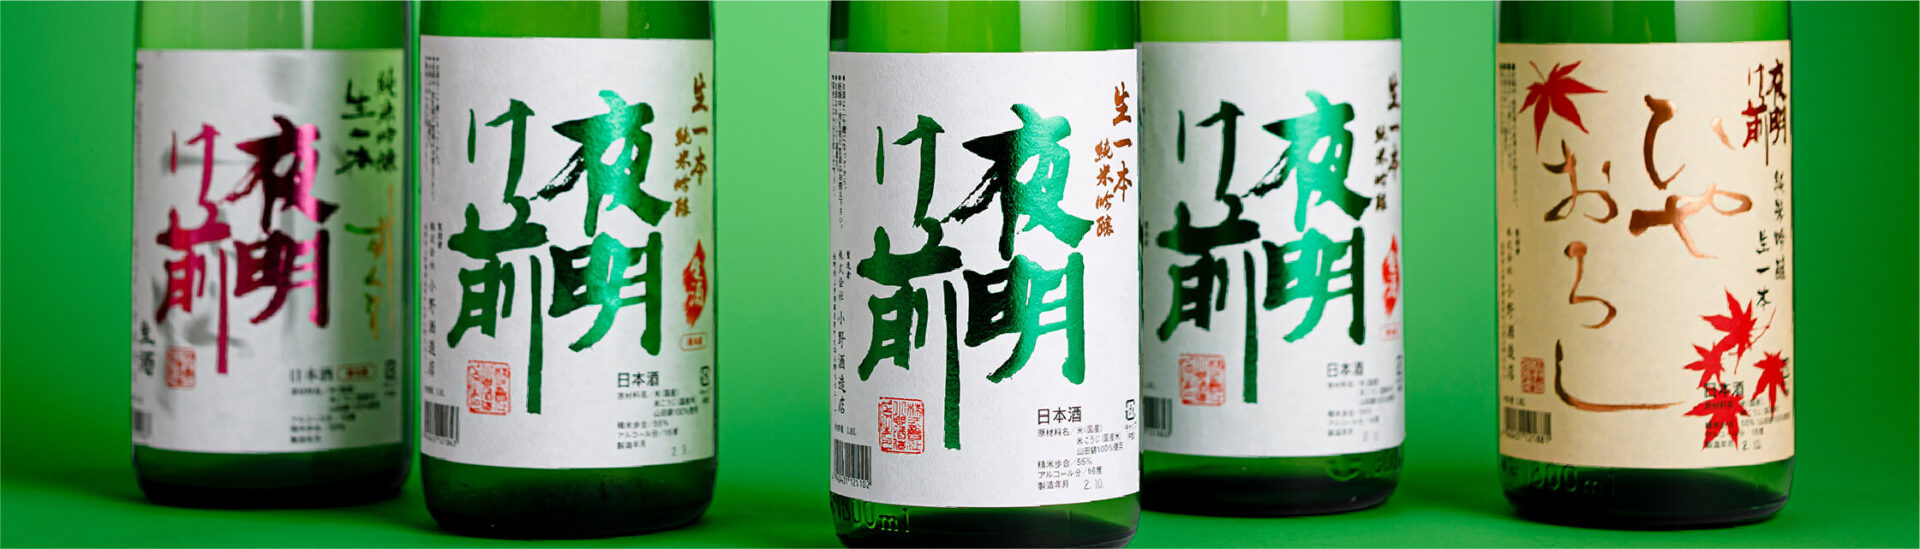 What kind of sake brand is 夜明け前 Yoake Mae(Before dawn)?